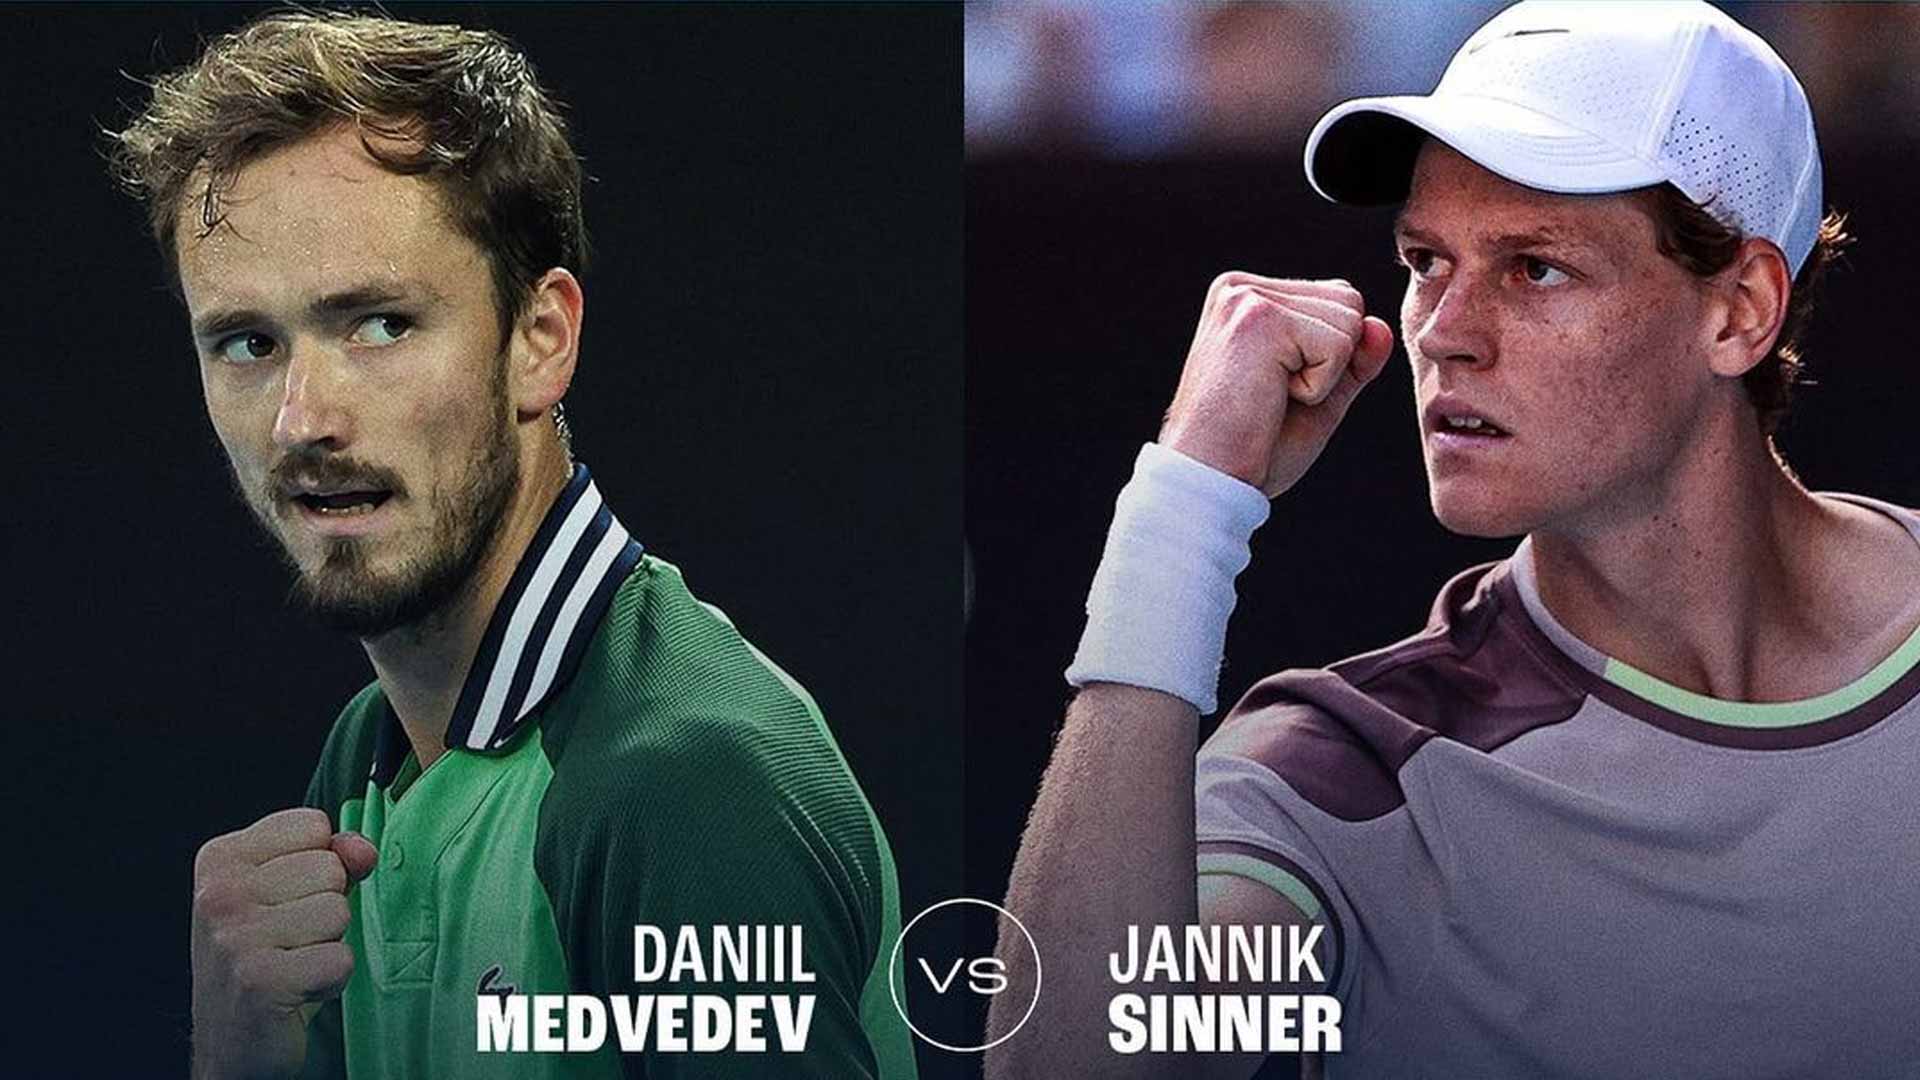 Daniil Medvedev leads Jannik Sinner 6-3 in the pair's Lexus ATP Head2Head series.